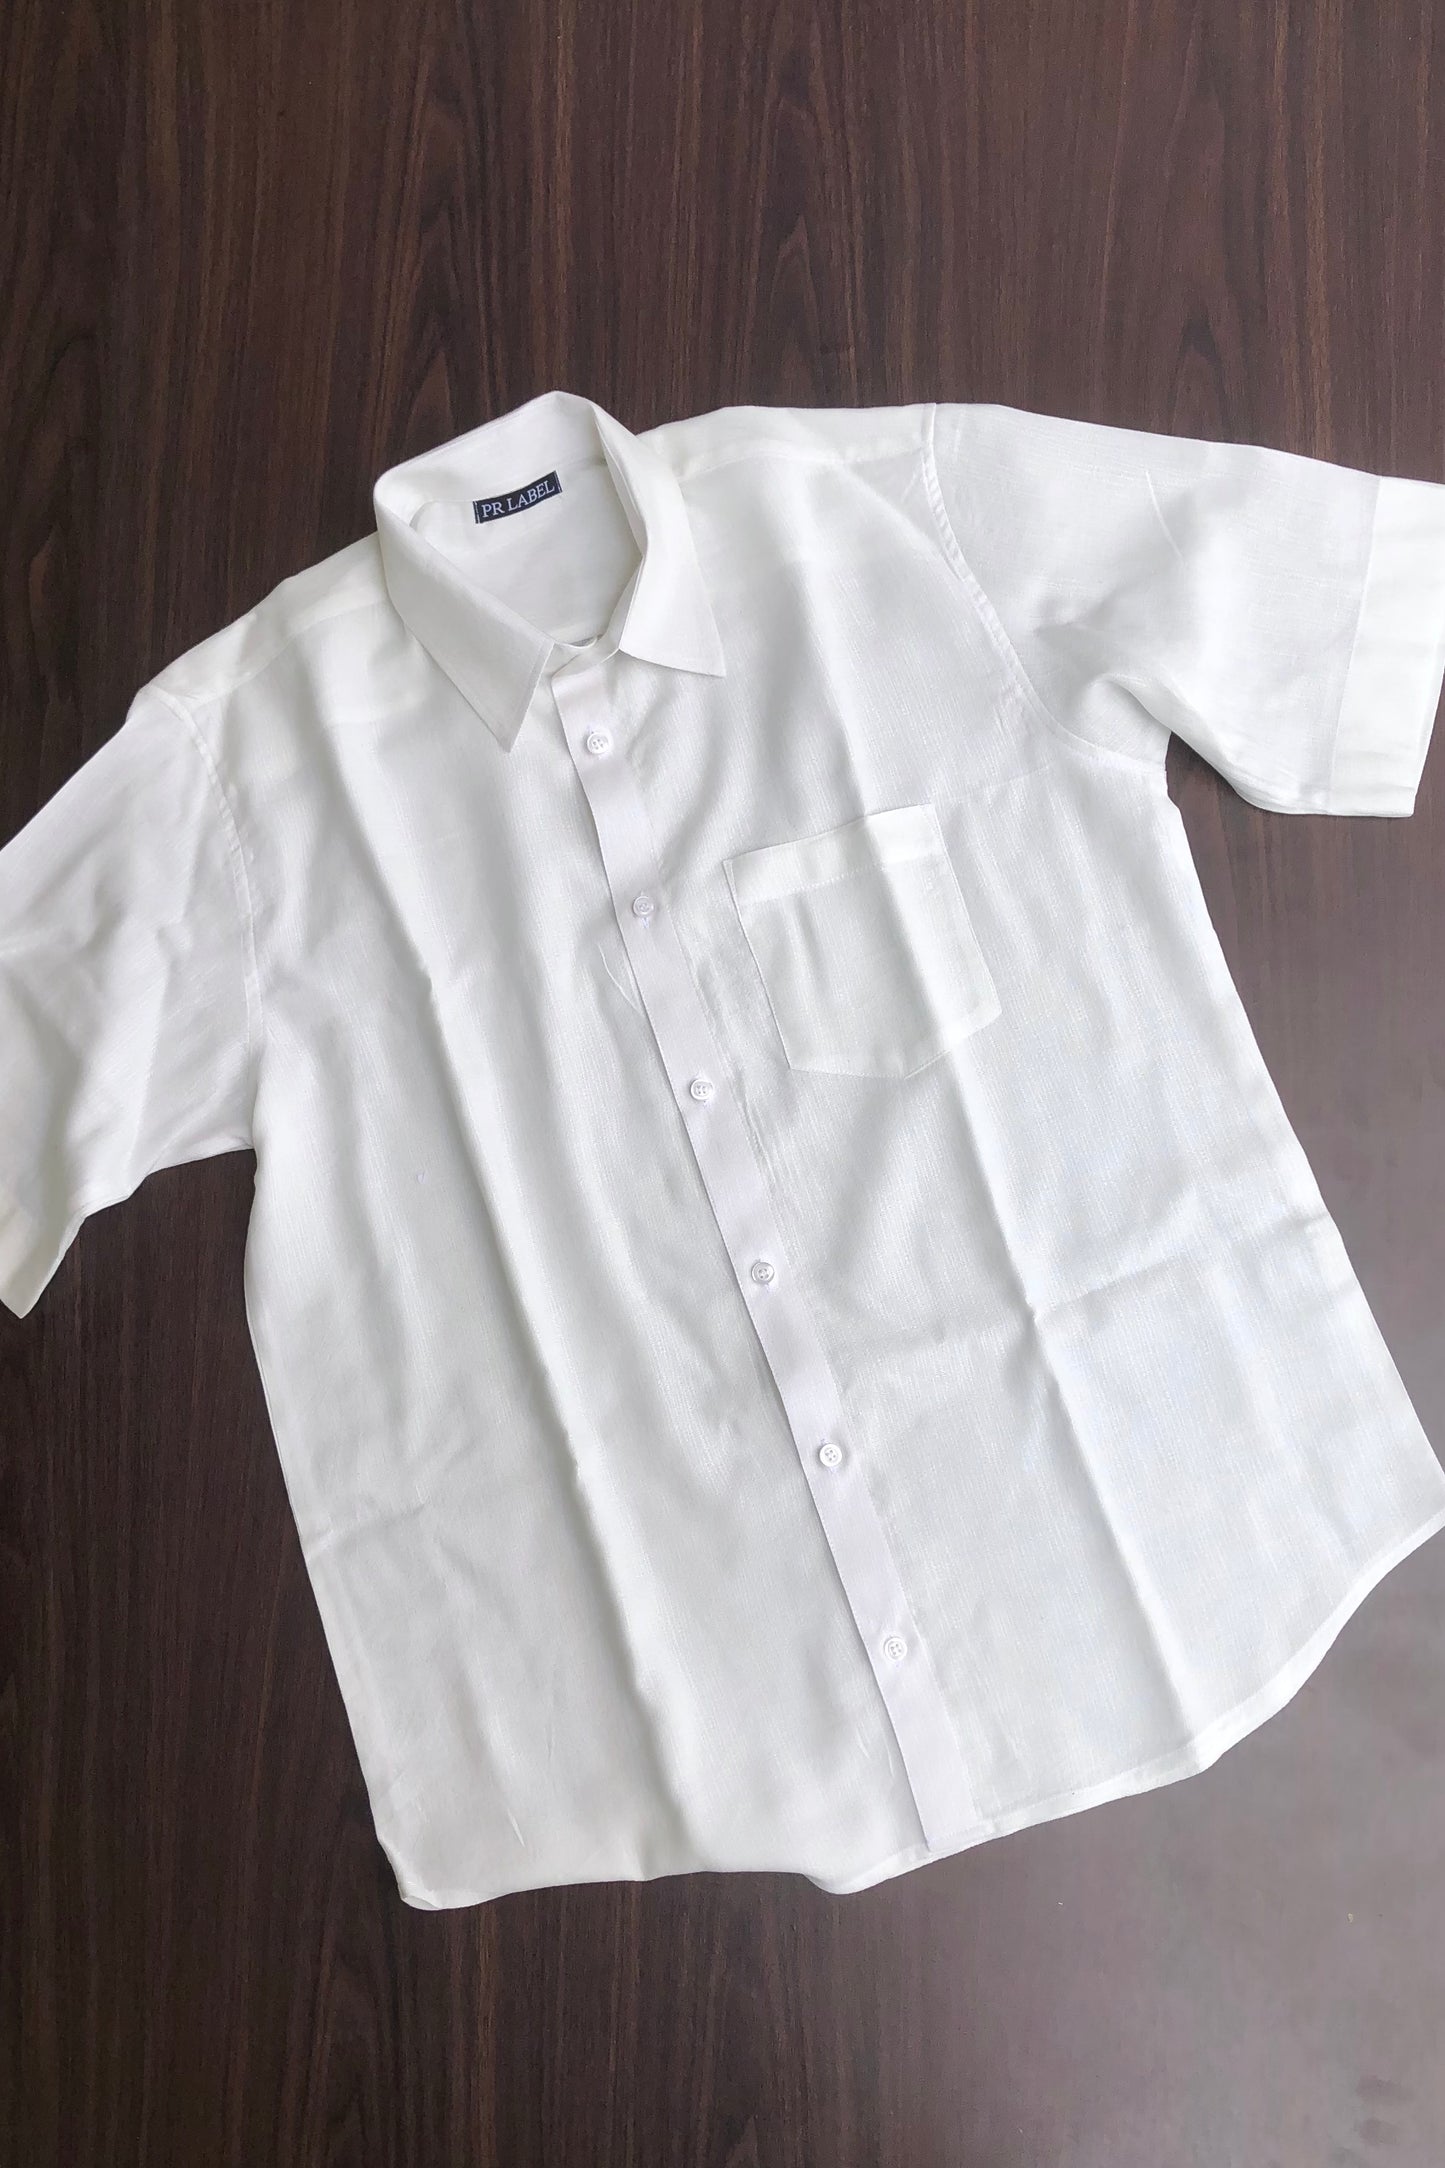 White tailored shirt